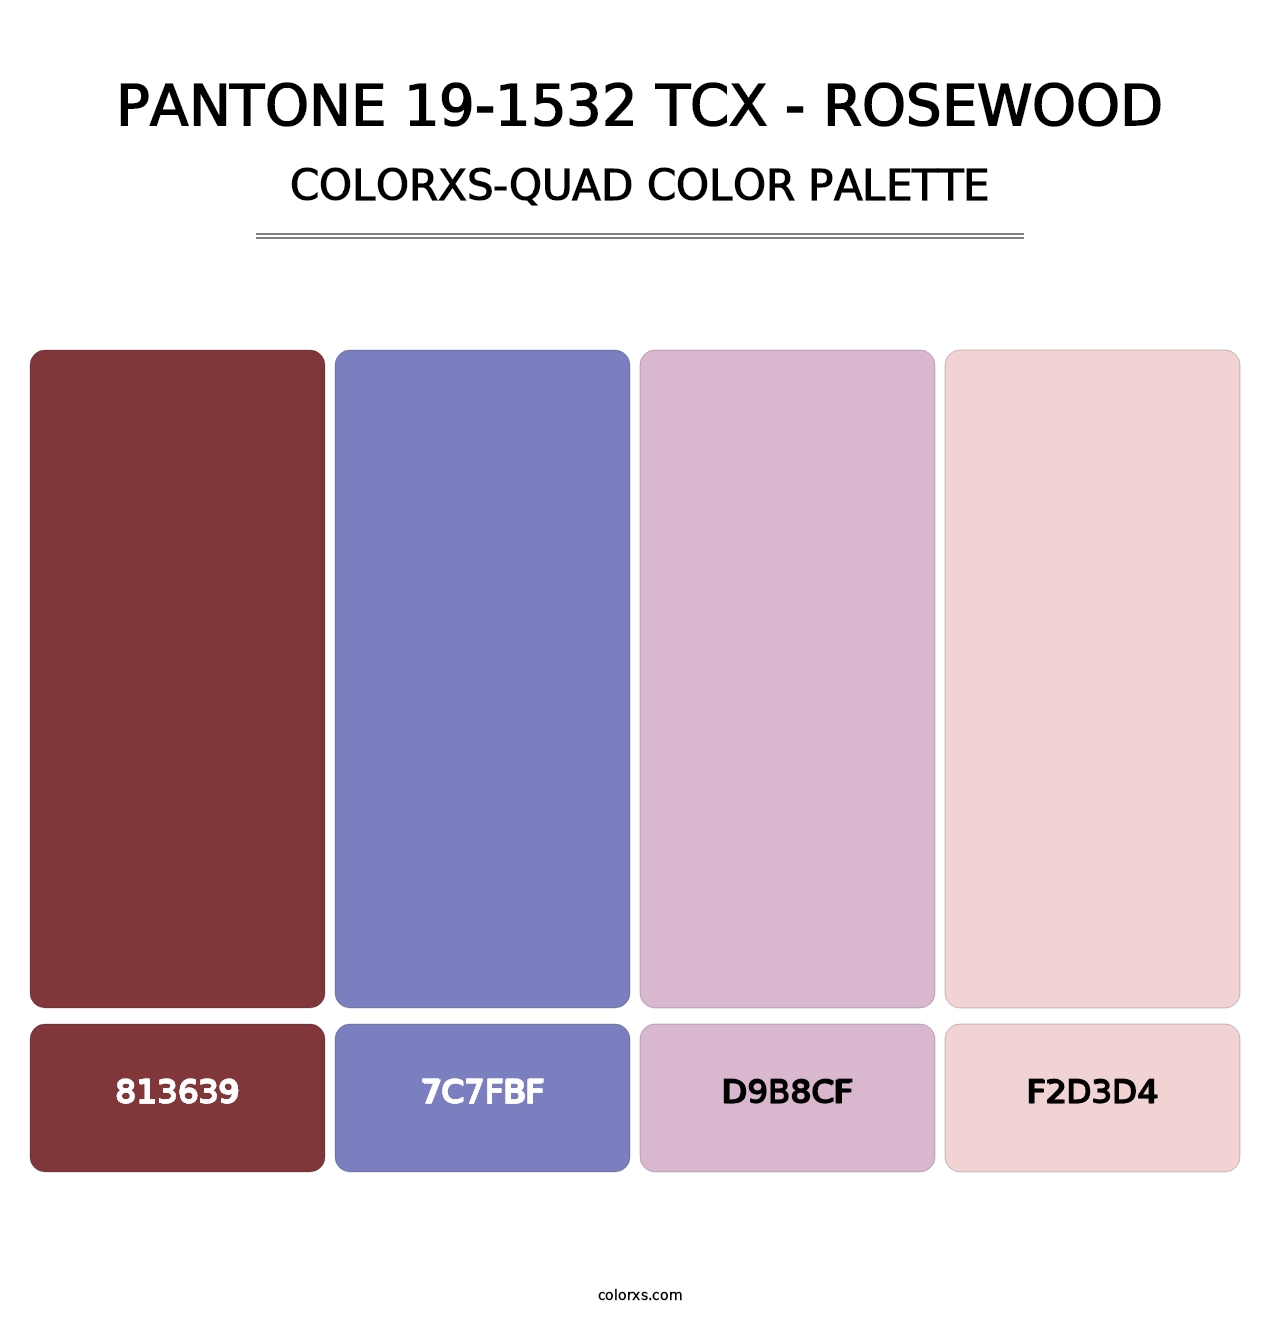 PANTONE 19-1532 TCX - Rosewood - Colorxs Quad Palette